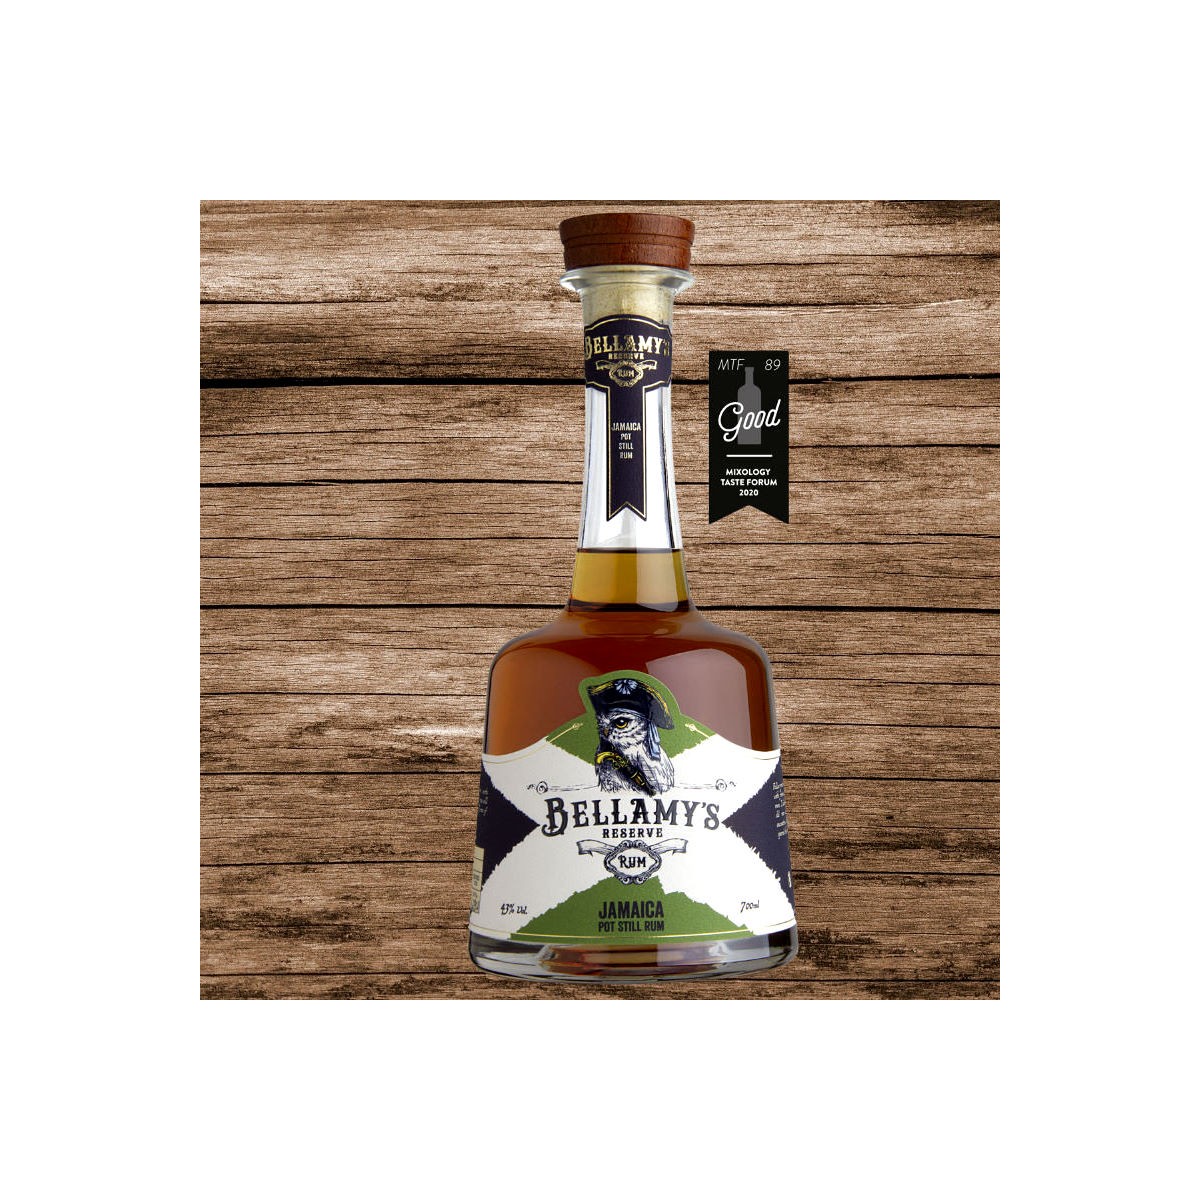 Bellamy's Reserve Rum Jamaica Pot Still 2-4YO Rum Cask Finish 43% 0,7L